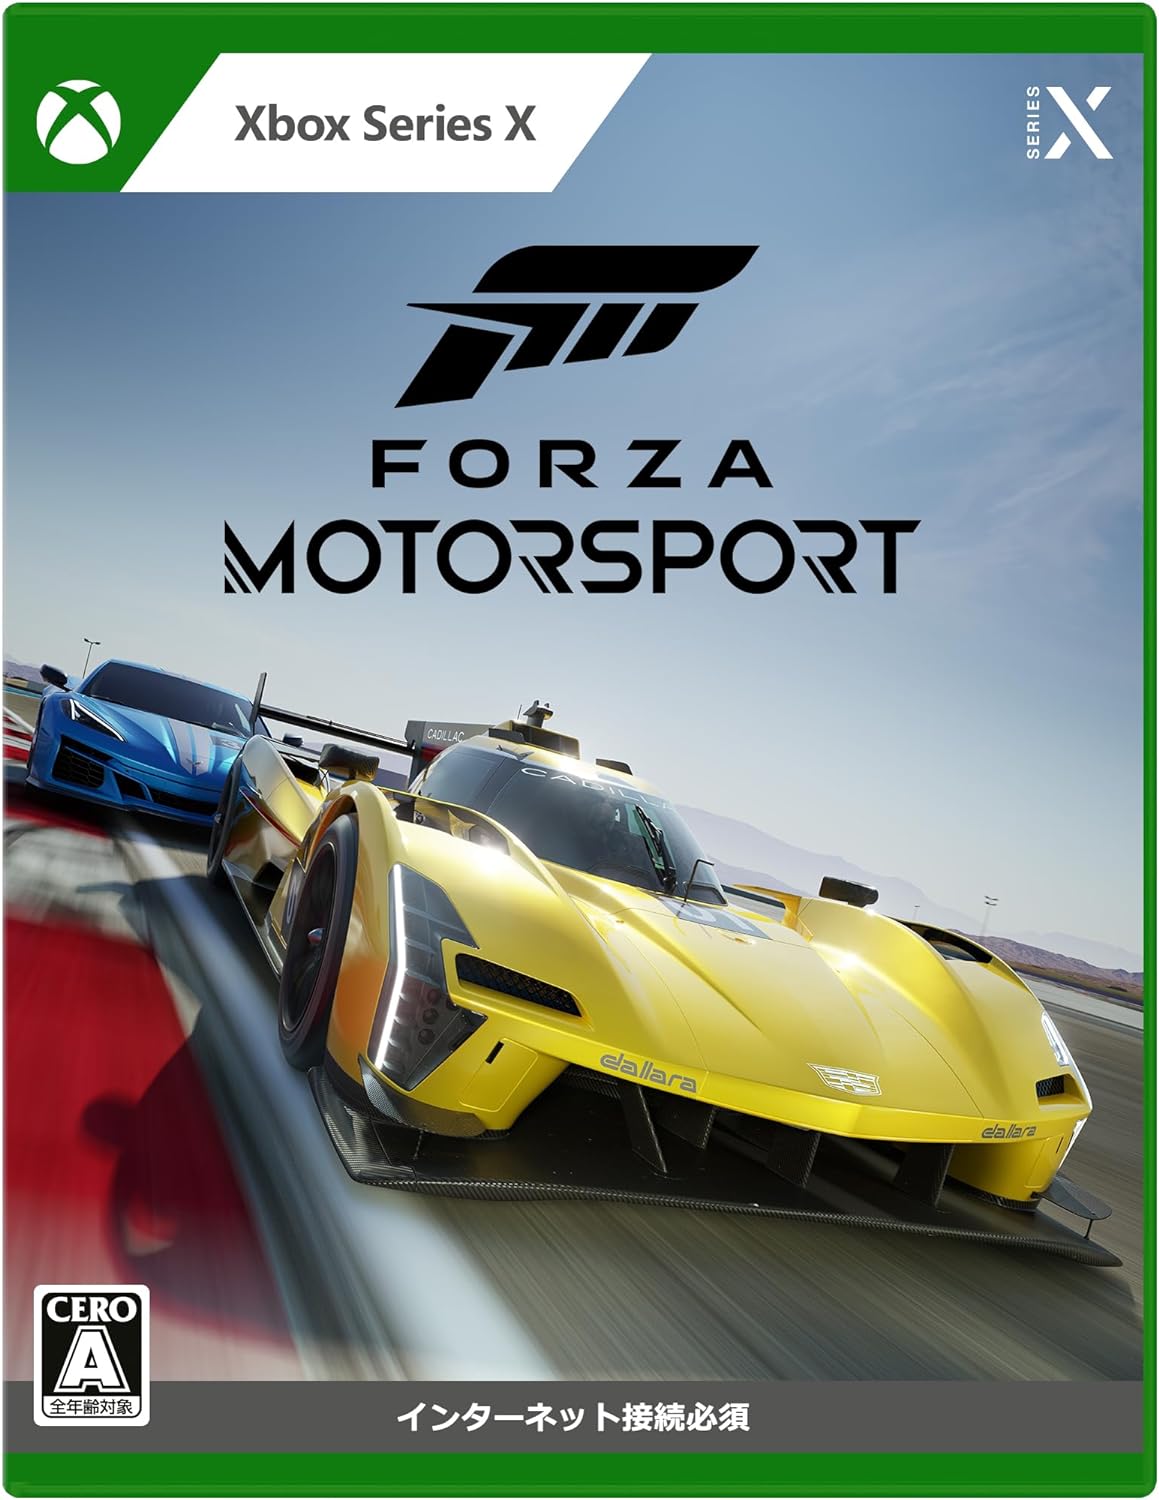 新品未開封品 Forza Motorsport 対応機種Xbox Series X VBH-00007 全年齢対象 4549576214054